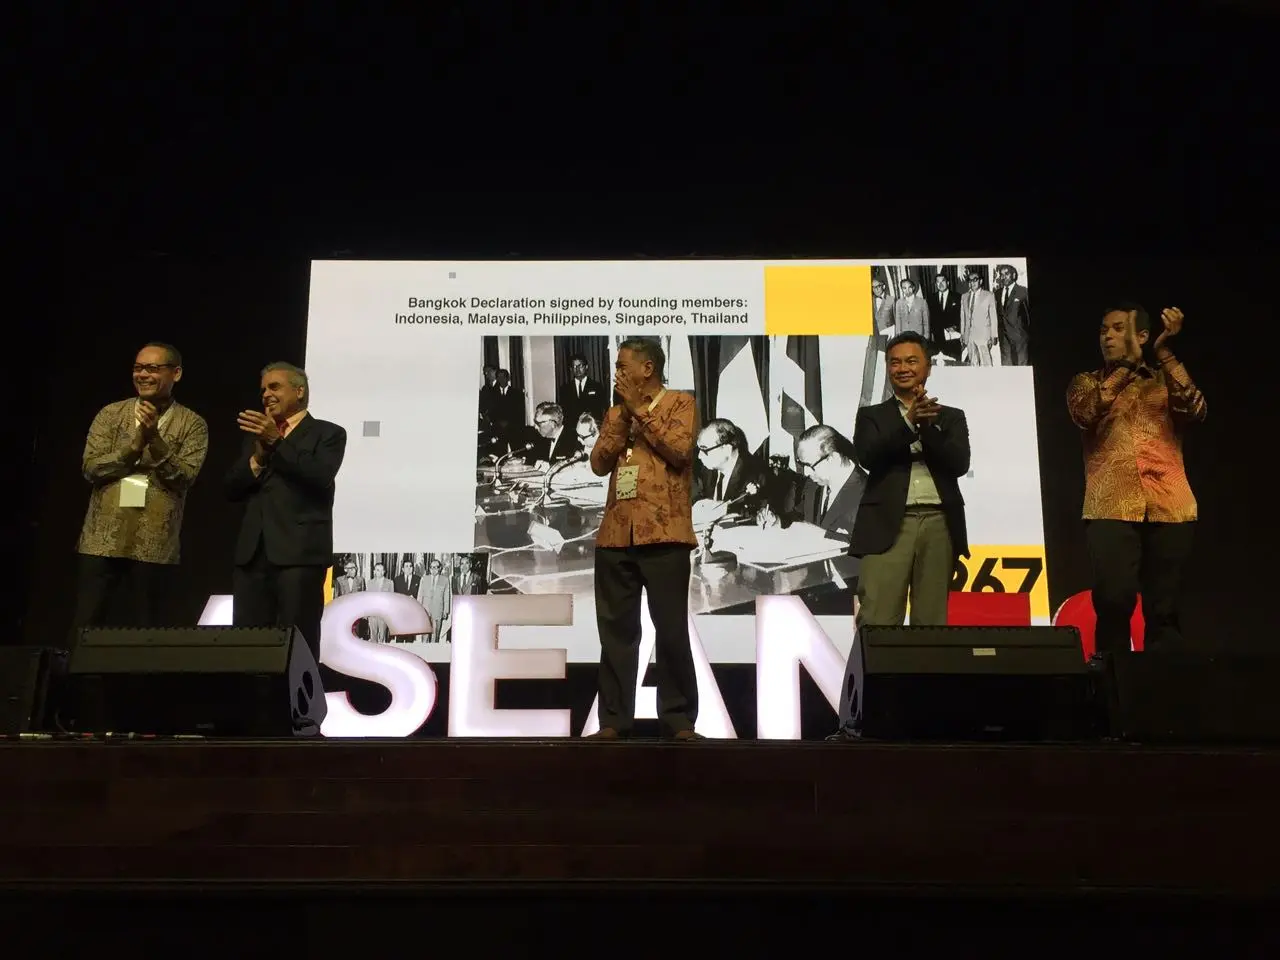 Sebelum membuka CIFP 2017, Dino Patti Djalal mengajak seluruh tamu undangan untuk bertepuk tangan selama satu menit sebagai tanda ucapan hari jadi ASEAN ke-50 tahun (Liputan6.com/Teddy Tri Setio Berty)